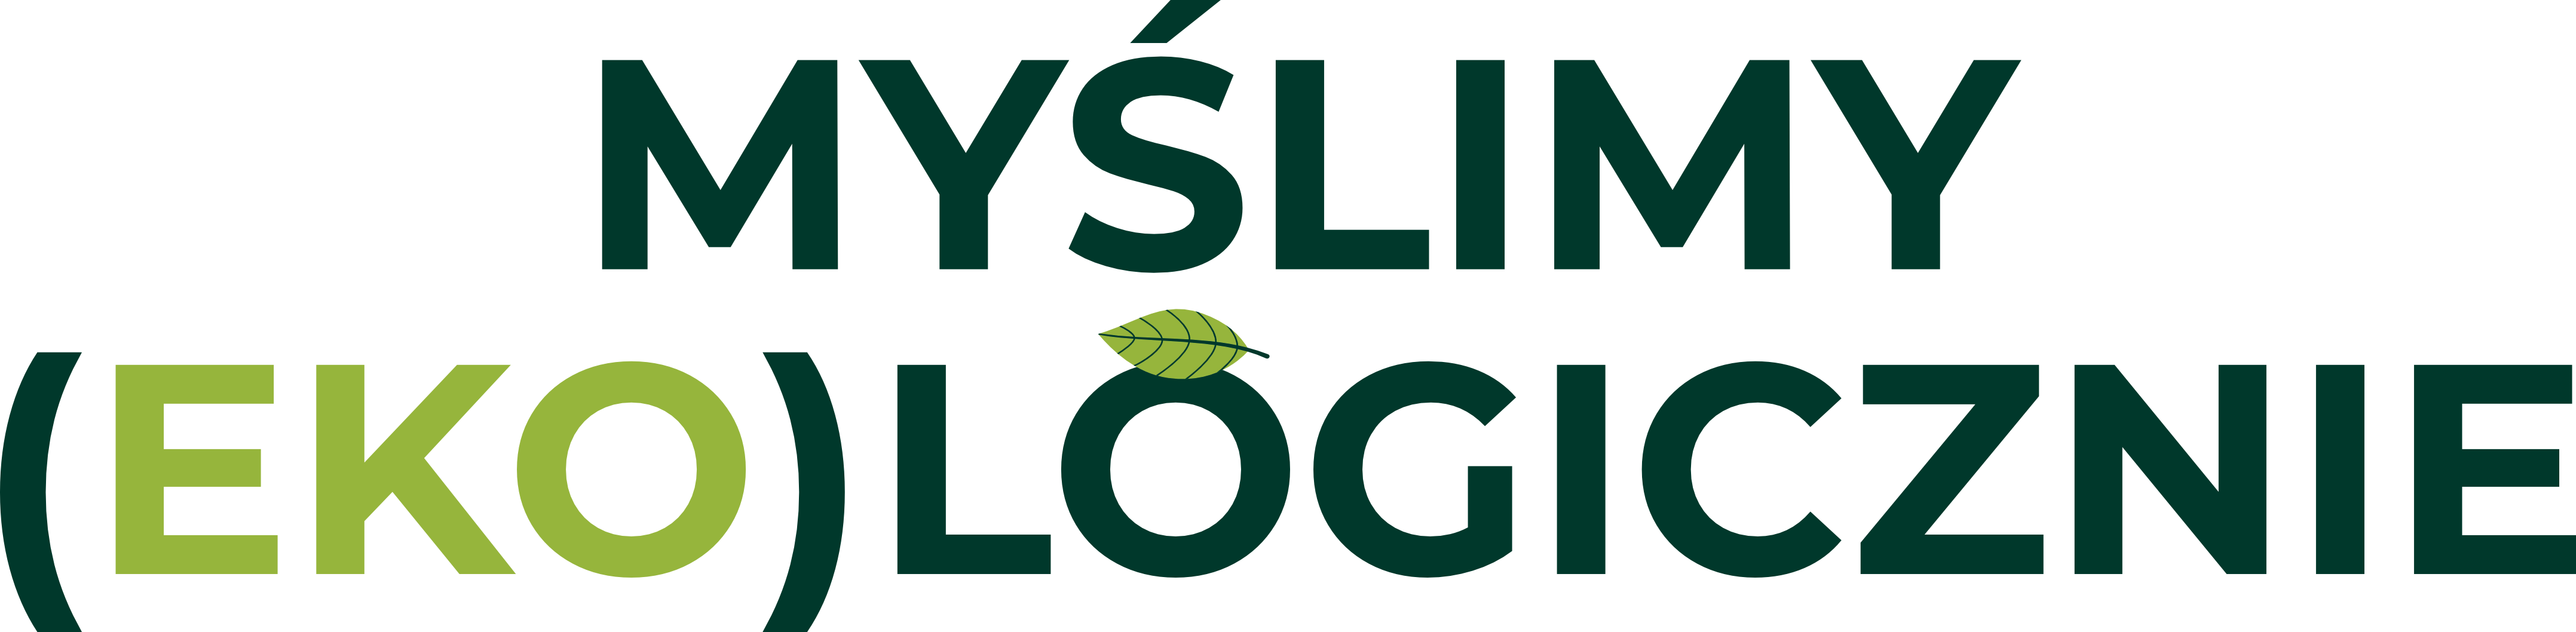 myślmy ekologicznie_logo